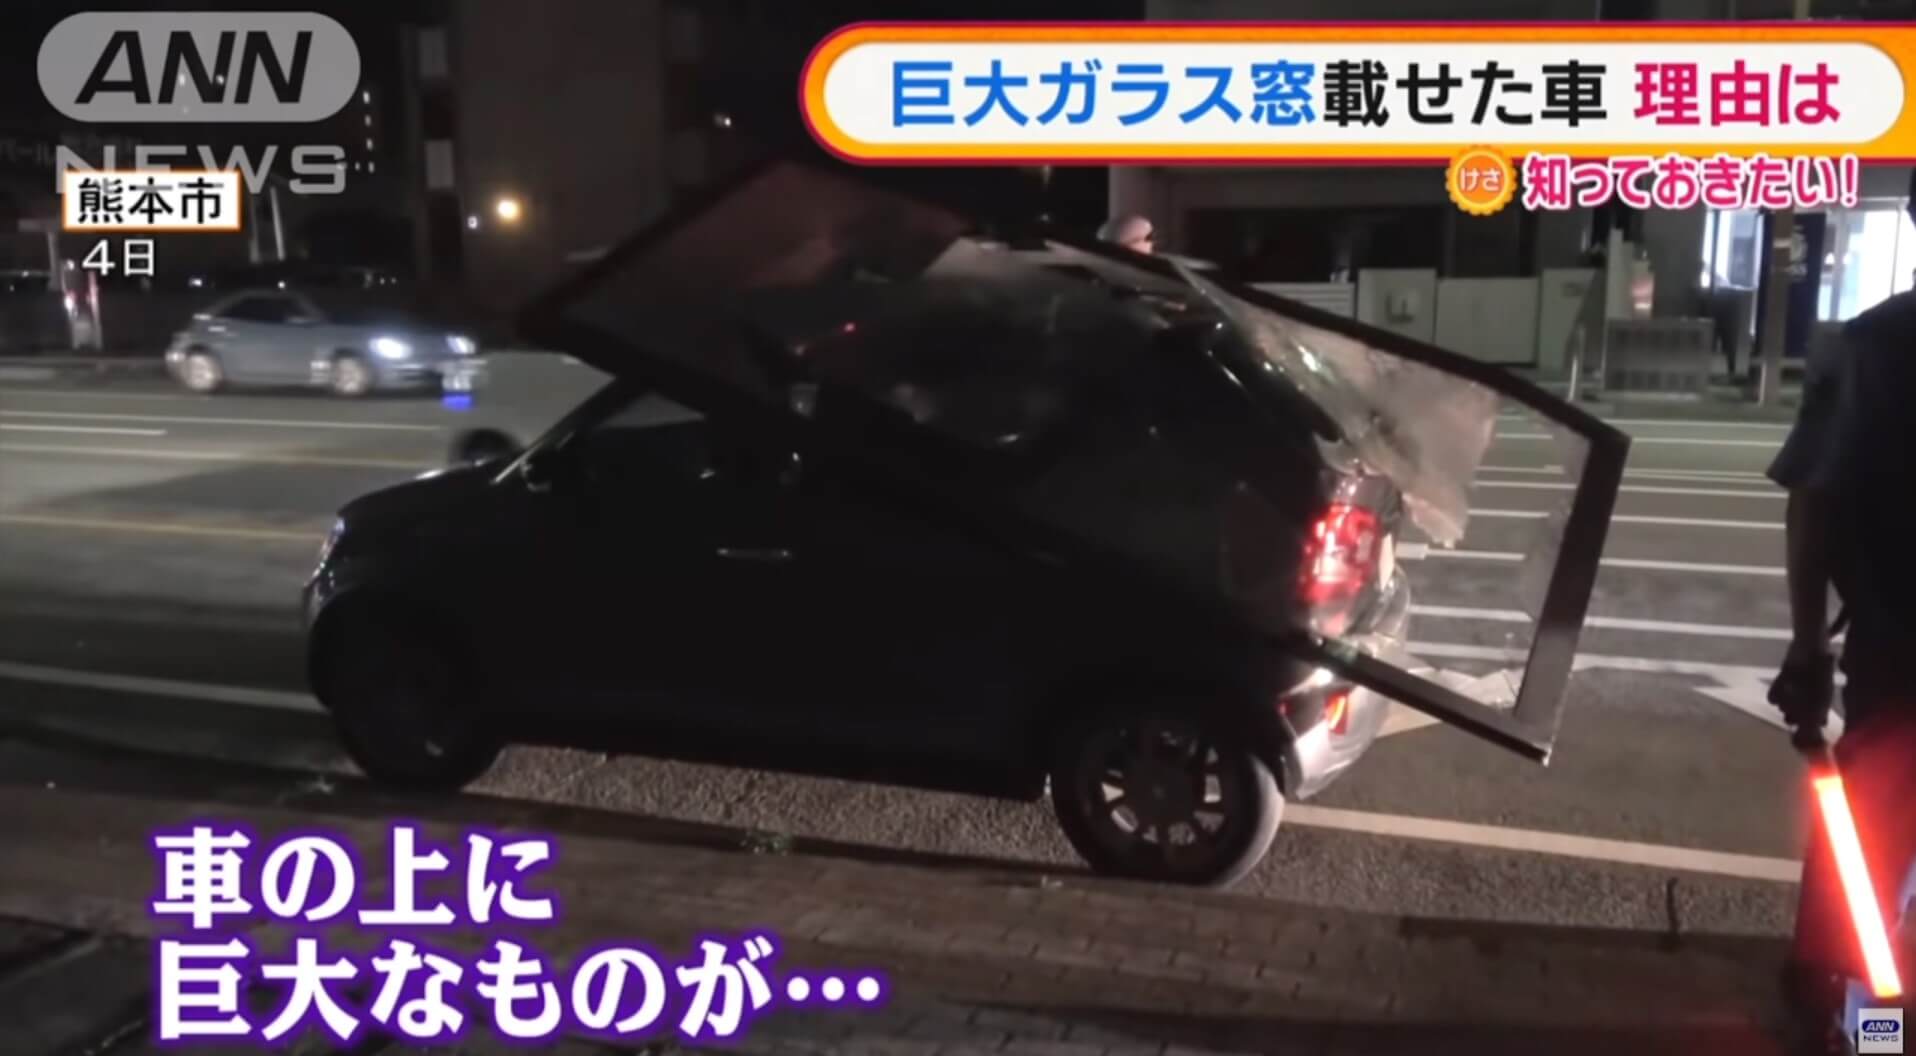 Carro com janela gigante pendurada chama atenção da polícia